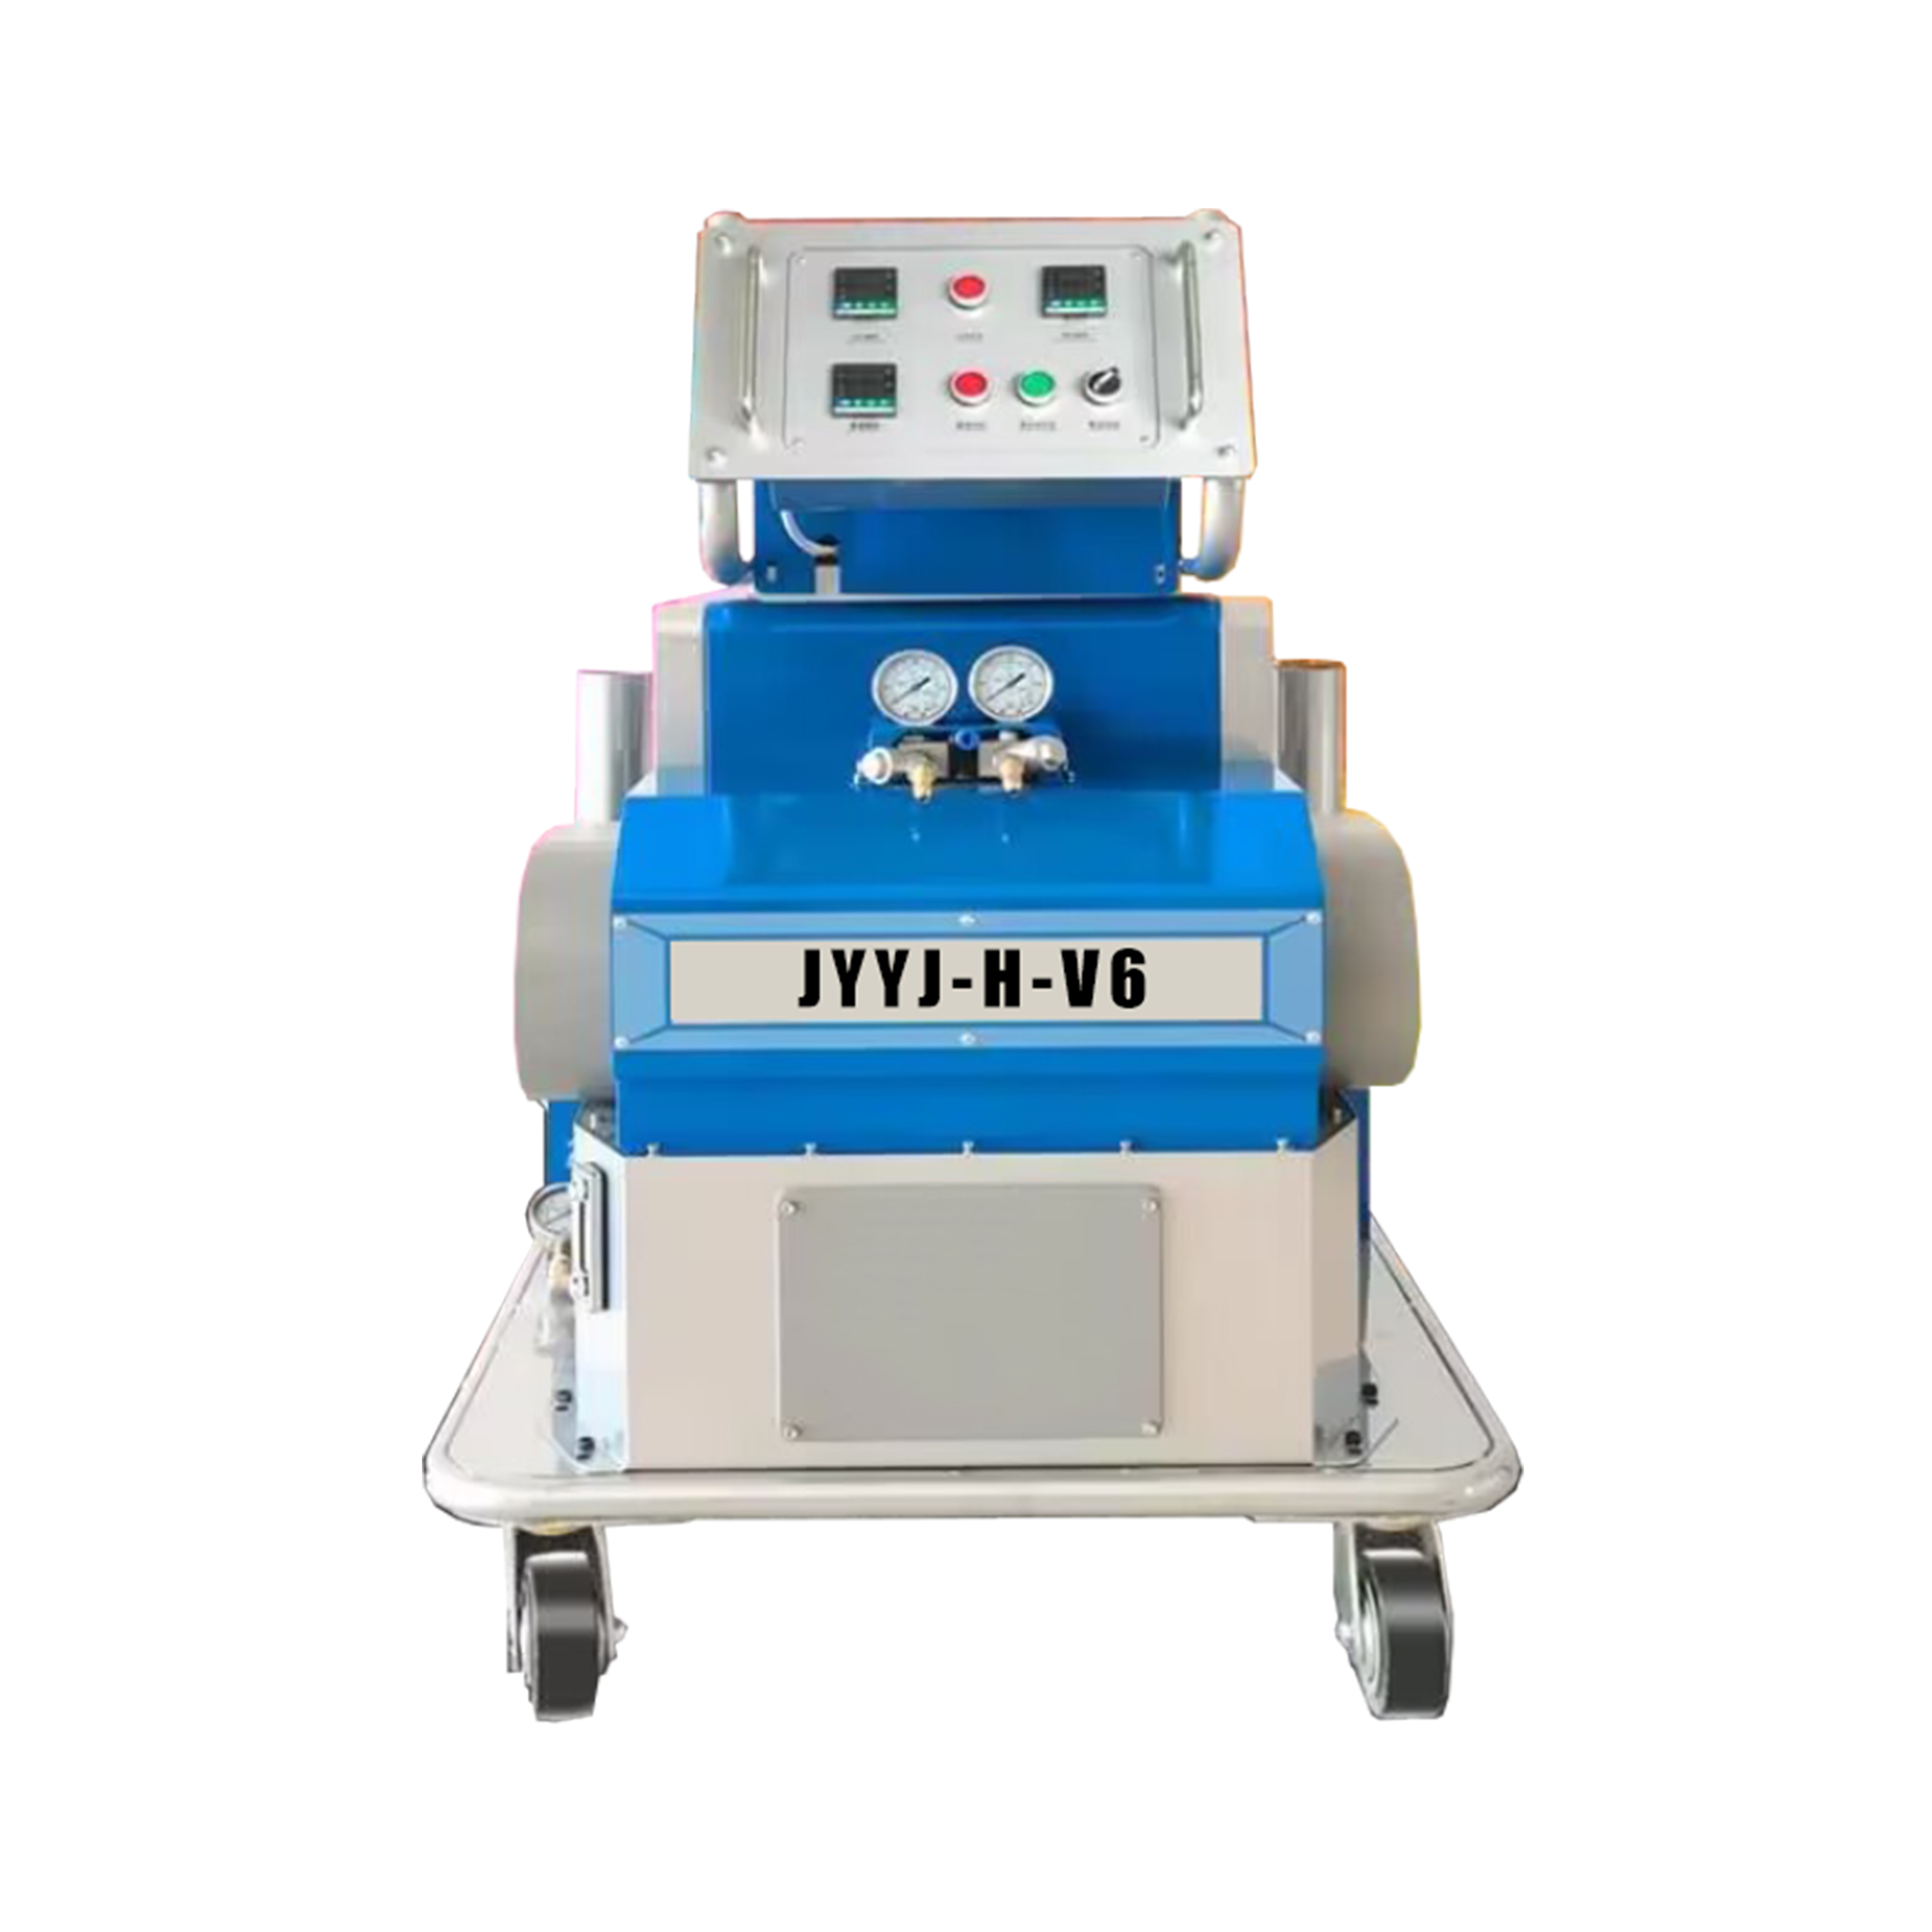 JYYJ-H-V6 polyurethane foam spraying machine